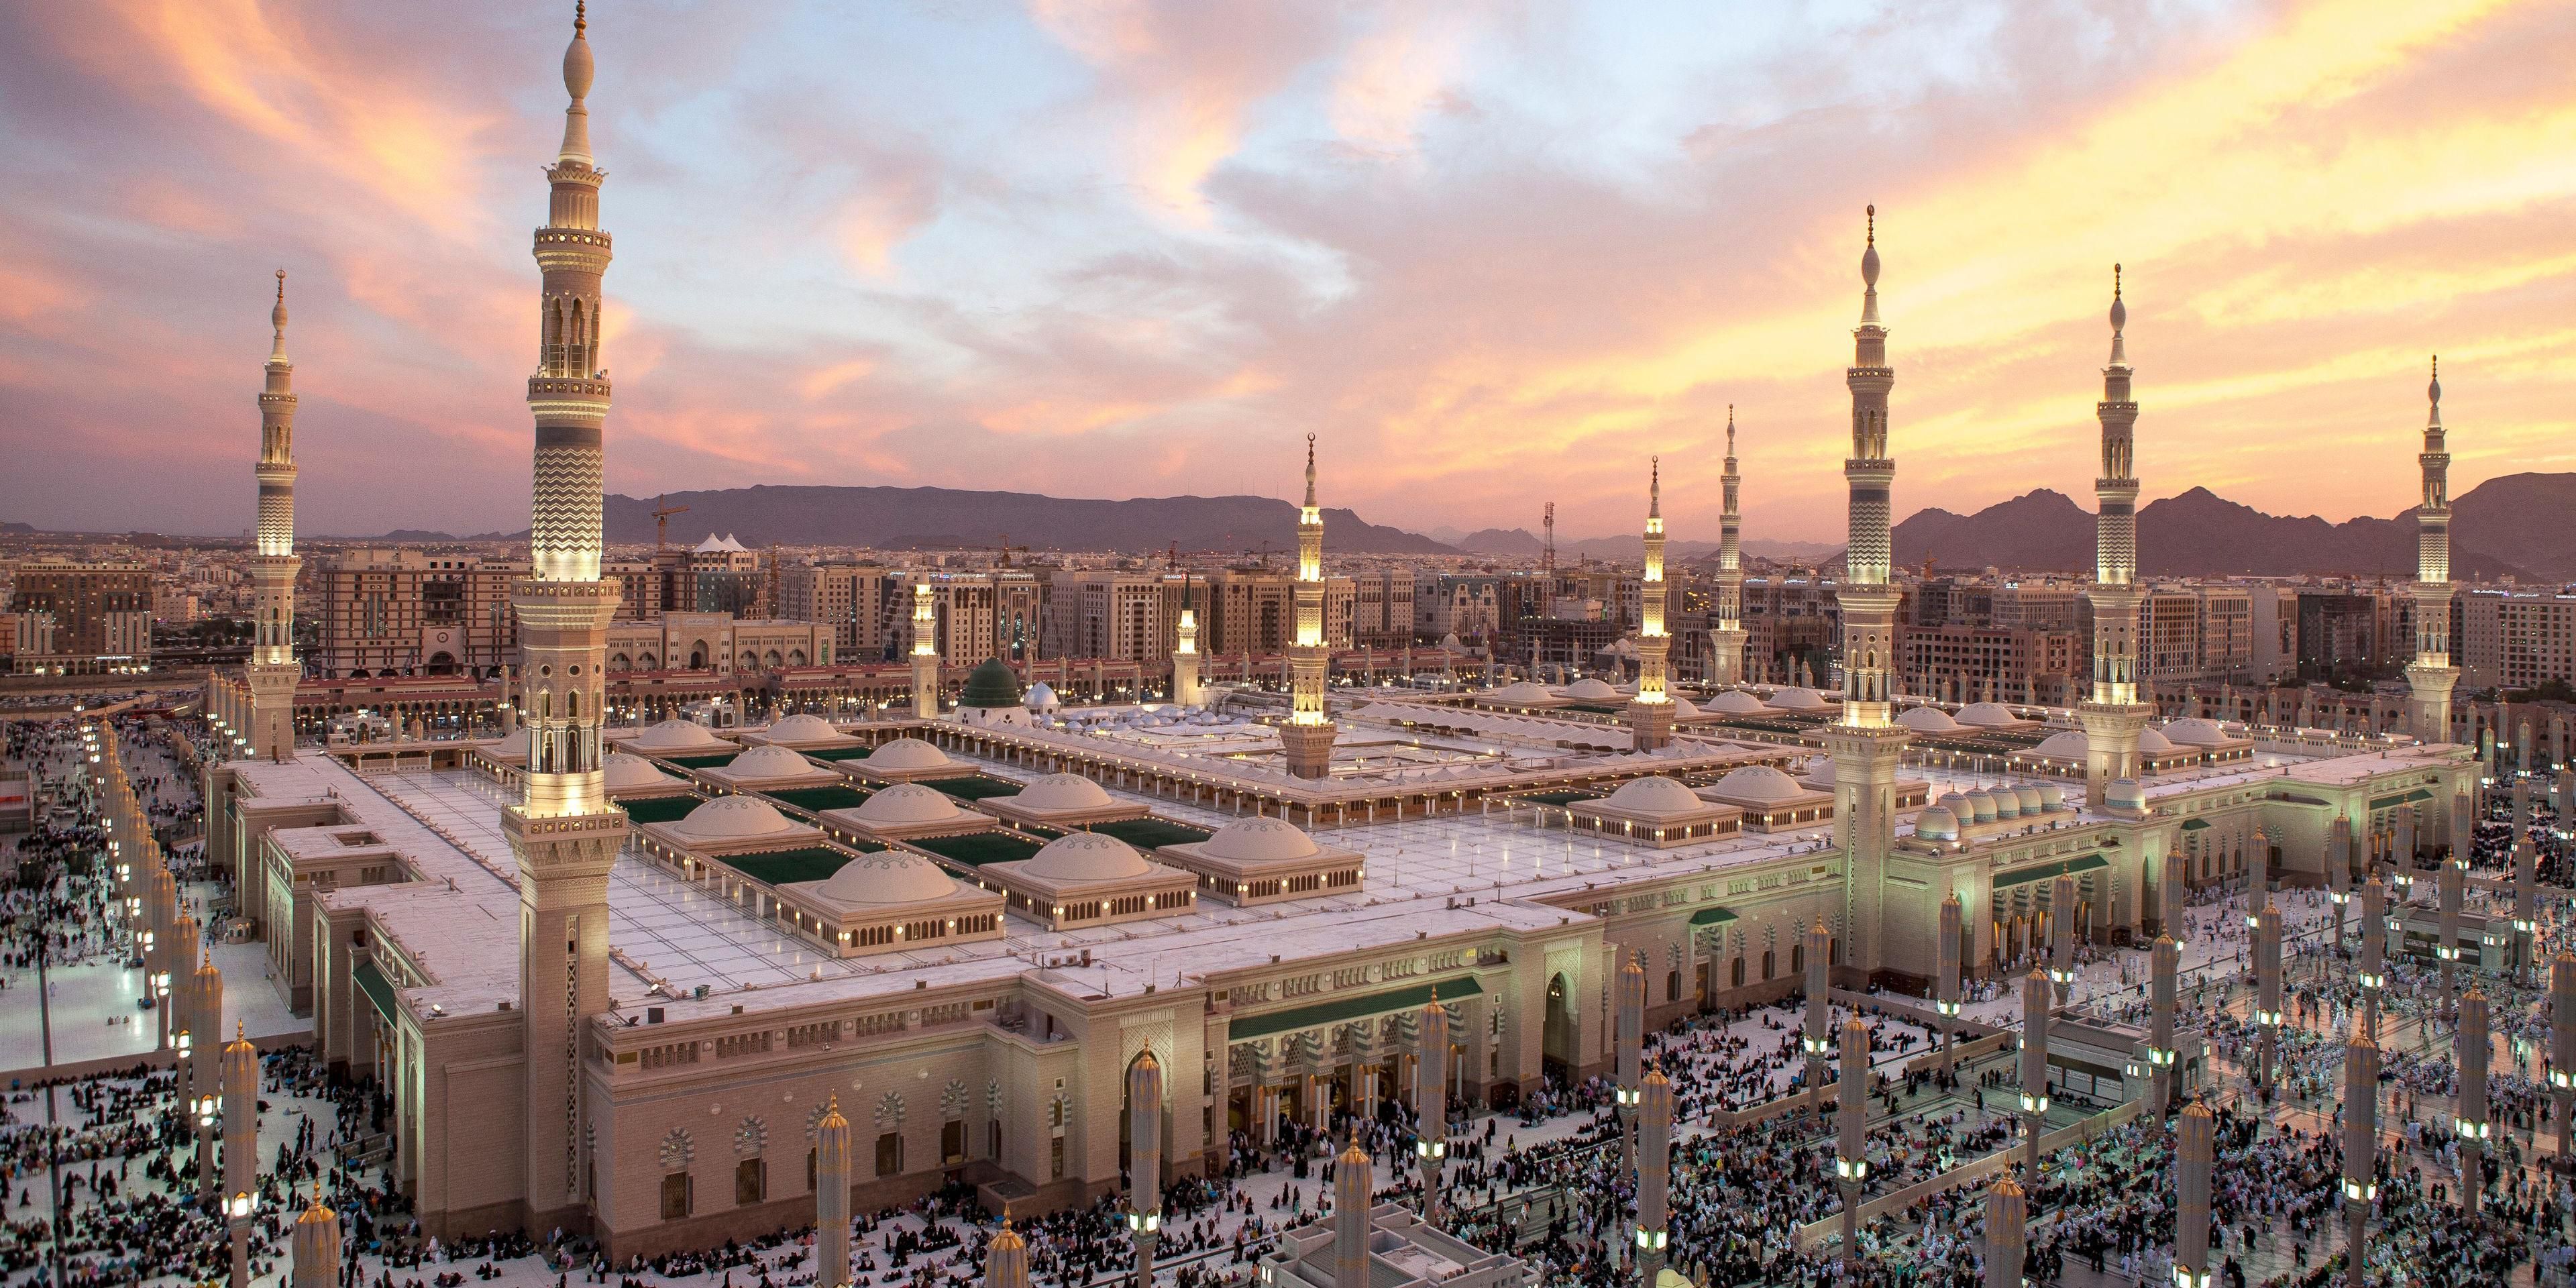 Ан саудовская аравия. Медина мечеть пророка. Мечеть пророка (Масджид АН-Набави). Медина мечеть пророка Мухаммеда. Масджид АН-Набави Медина Саудовская Аравия.